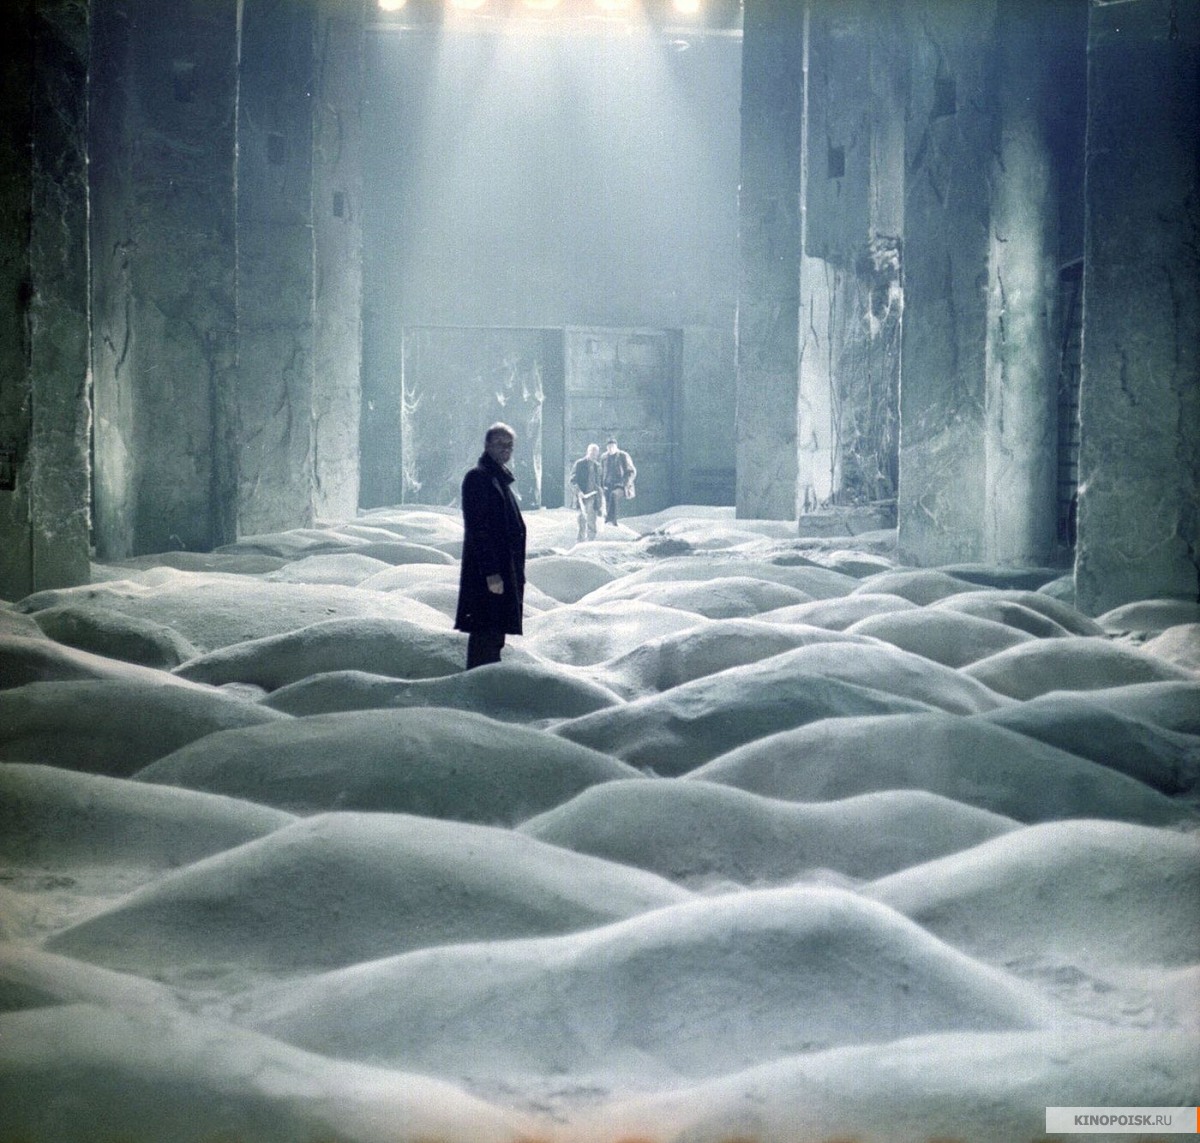 Una scena tratta dal film "Stalker" di Andrej Tarkovskij.